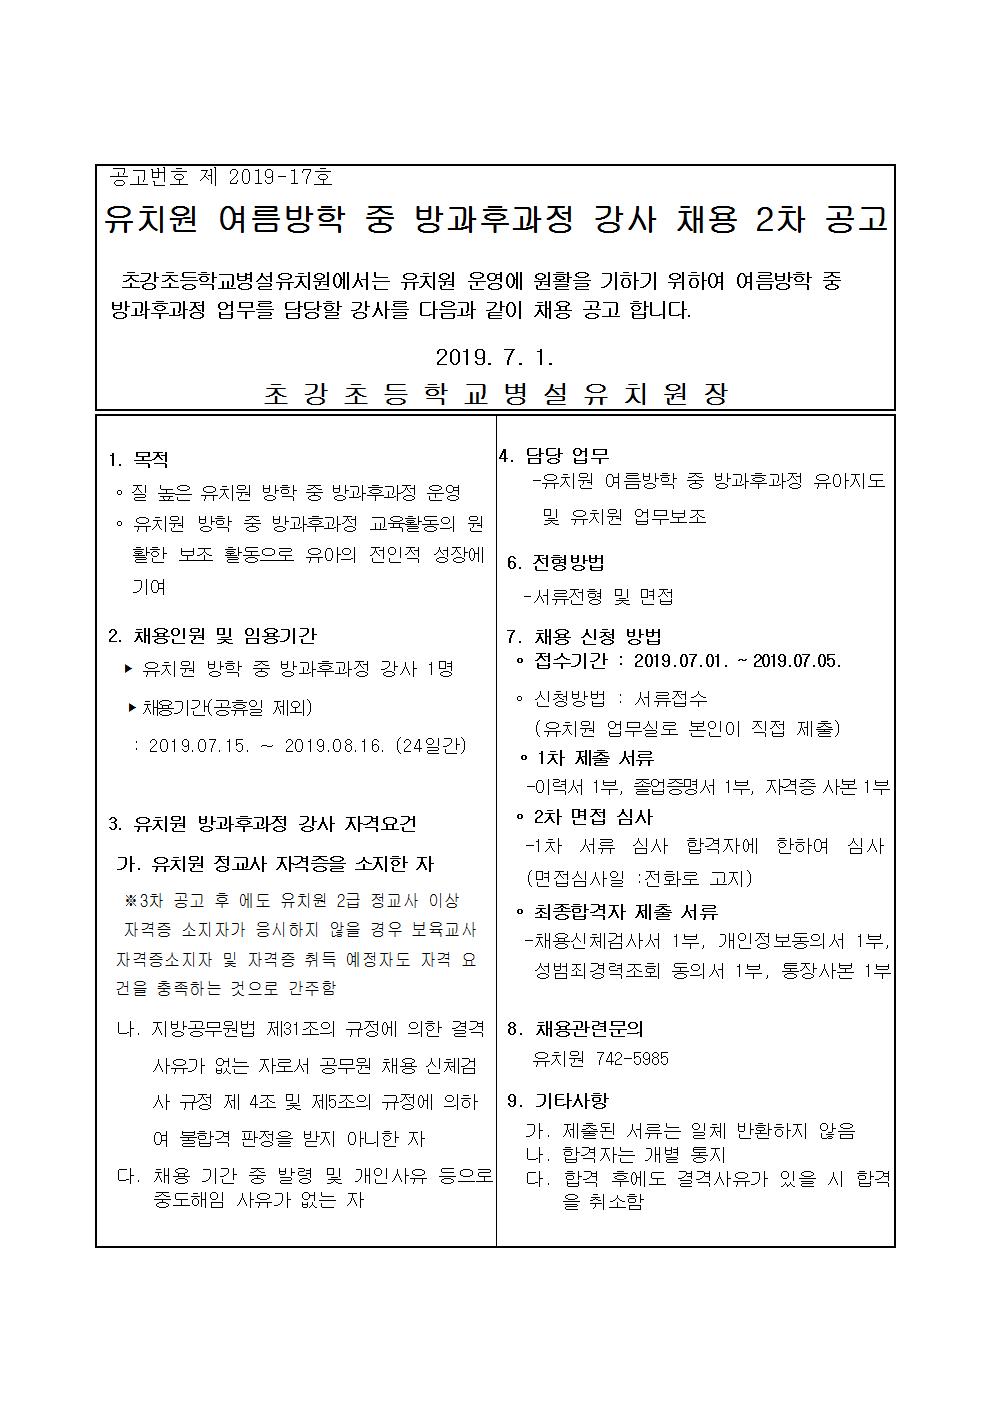 2019. 유치원 여름방학중 방과후과정 강사 채용 공고문 2차001